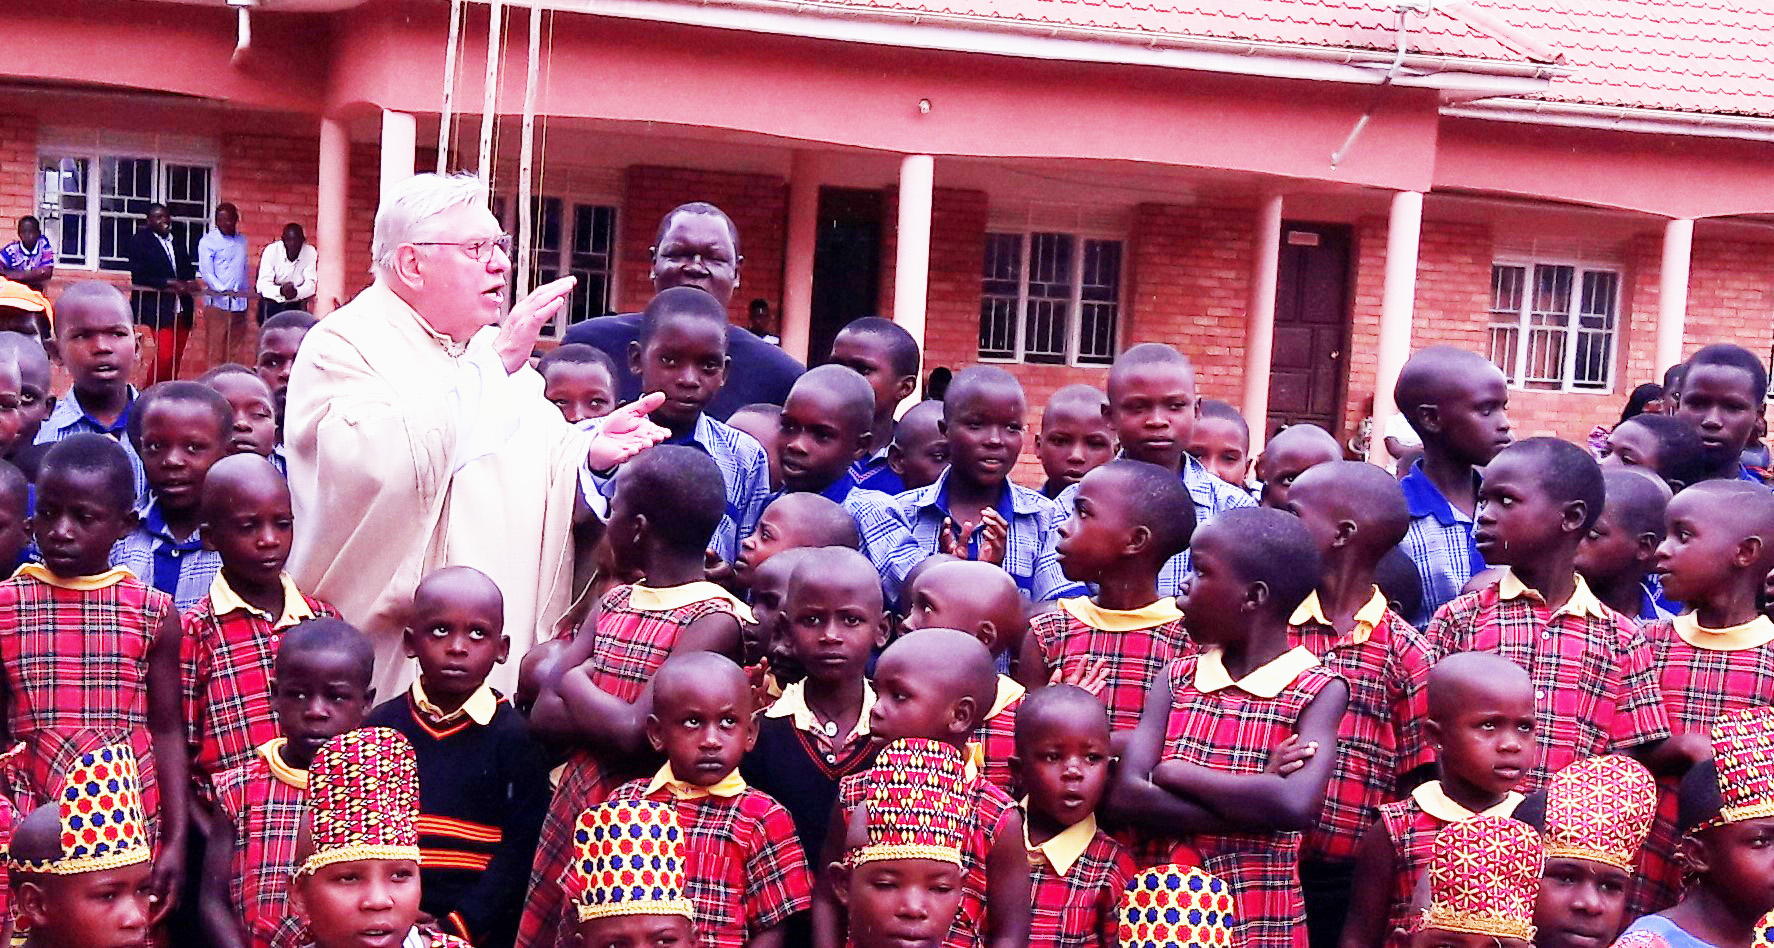 Pfarrer Erich Elpers lebte für die Menschen in Uganda, insbesondere für die Schulausbildung der Kinder.